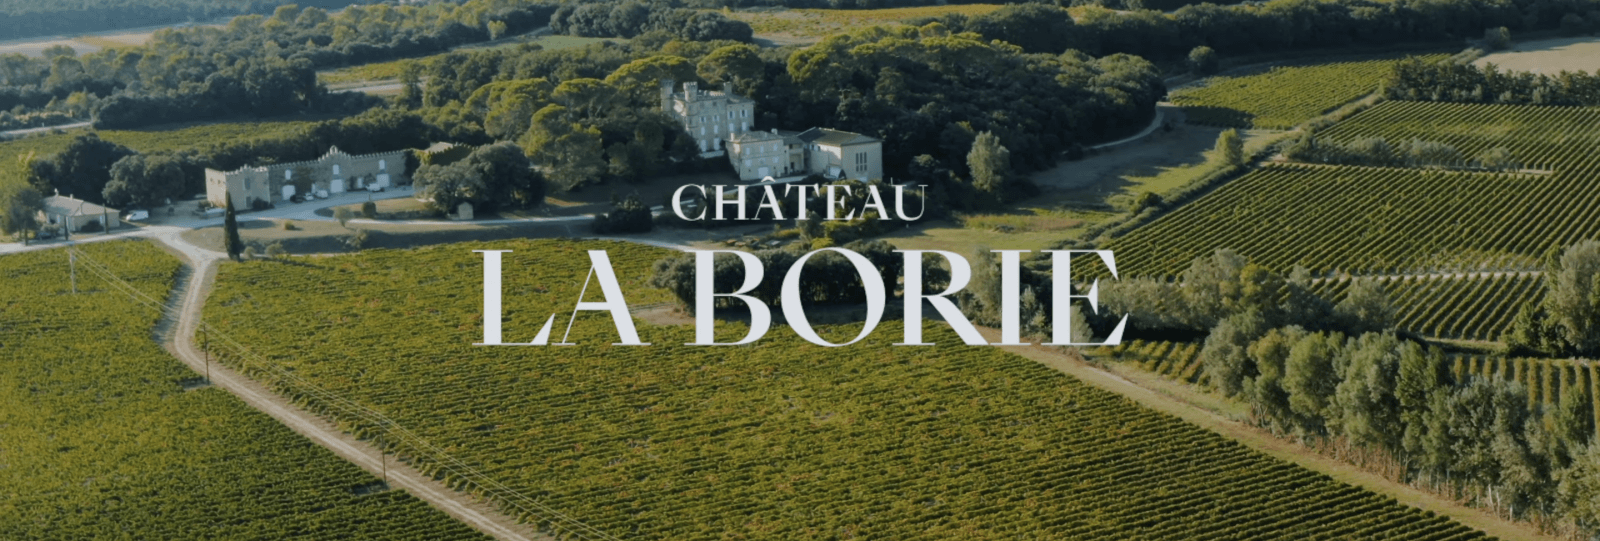 Château la Borie